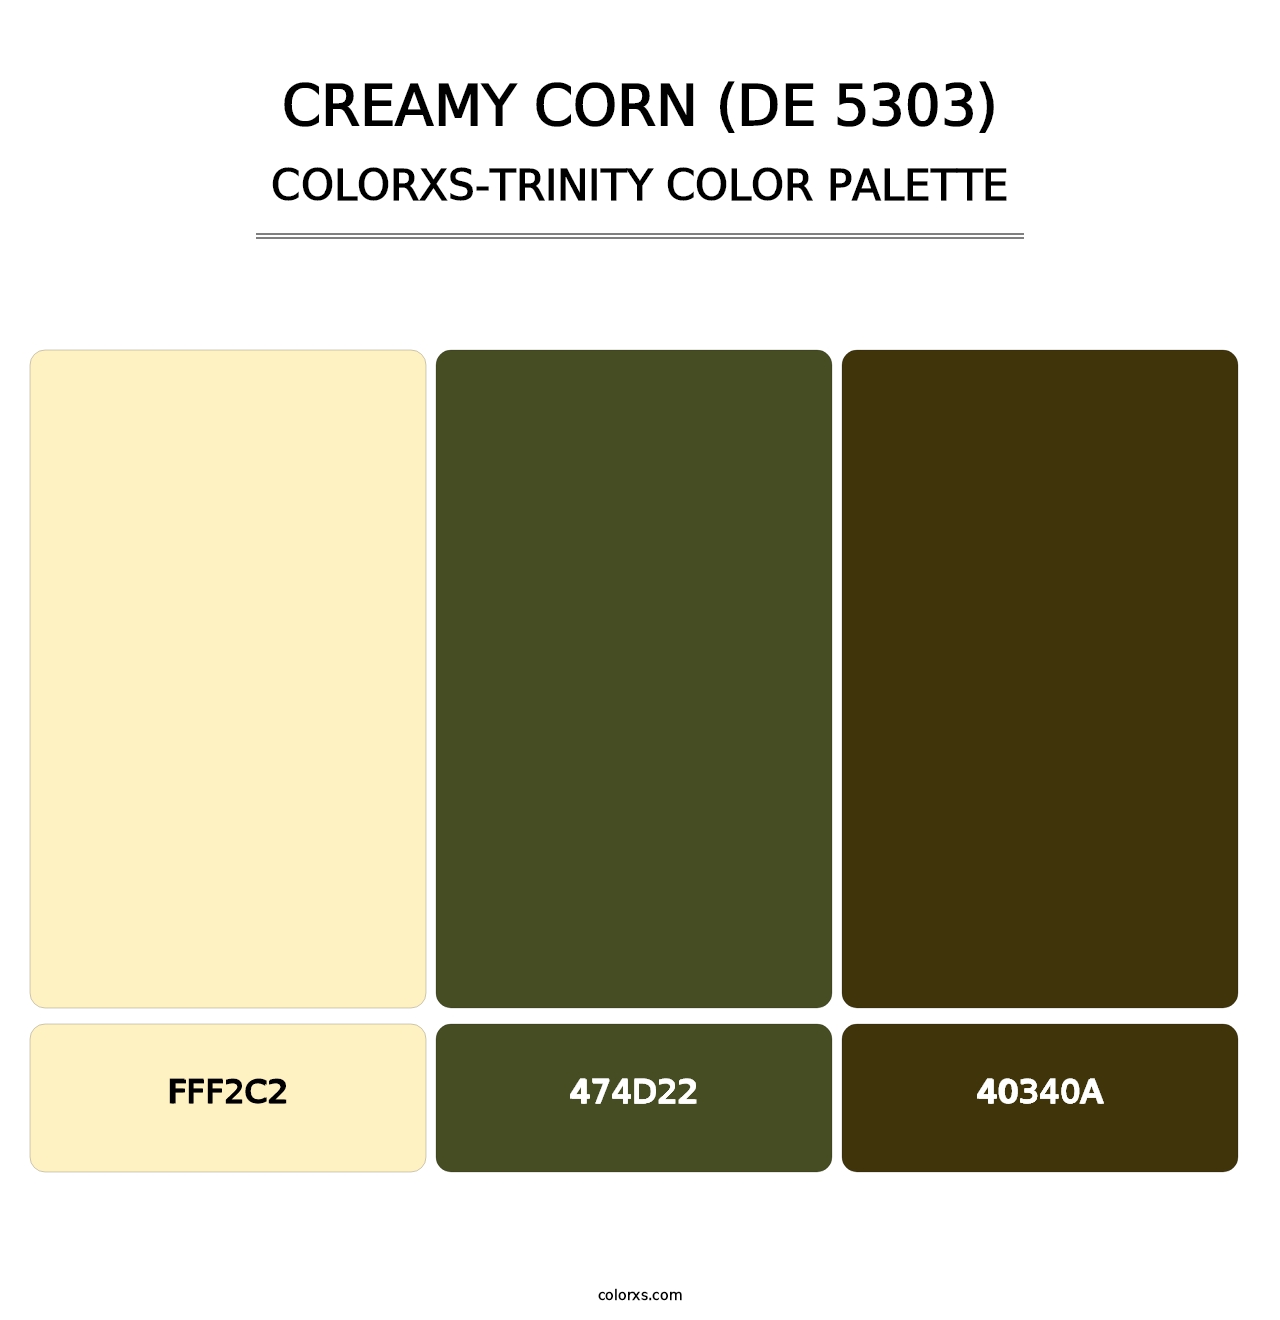 Creamy Corn (DE 5303) - Colorxs Trinity Palette